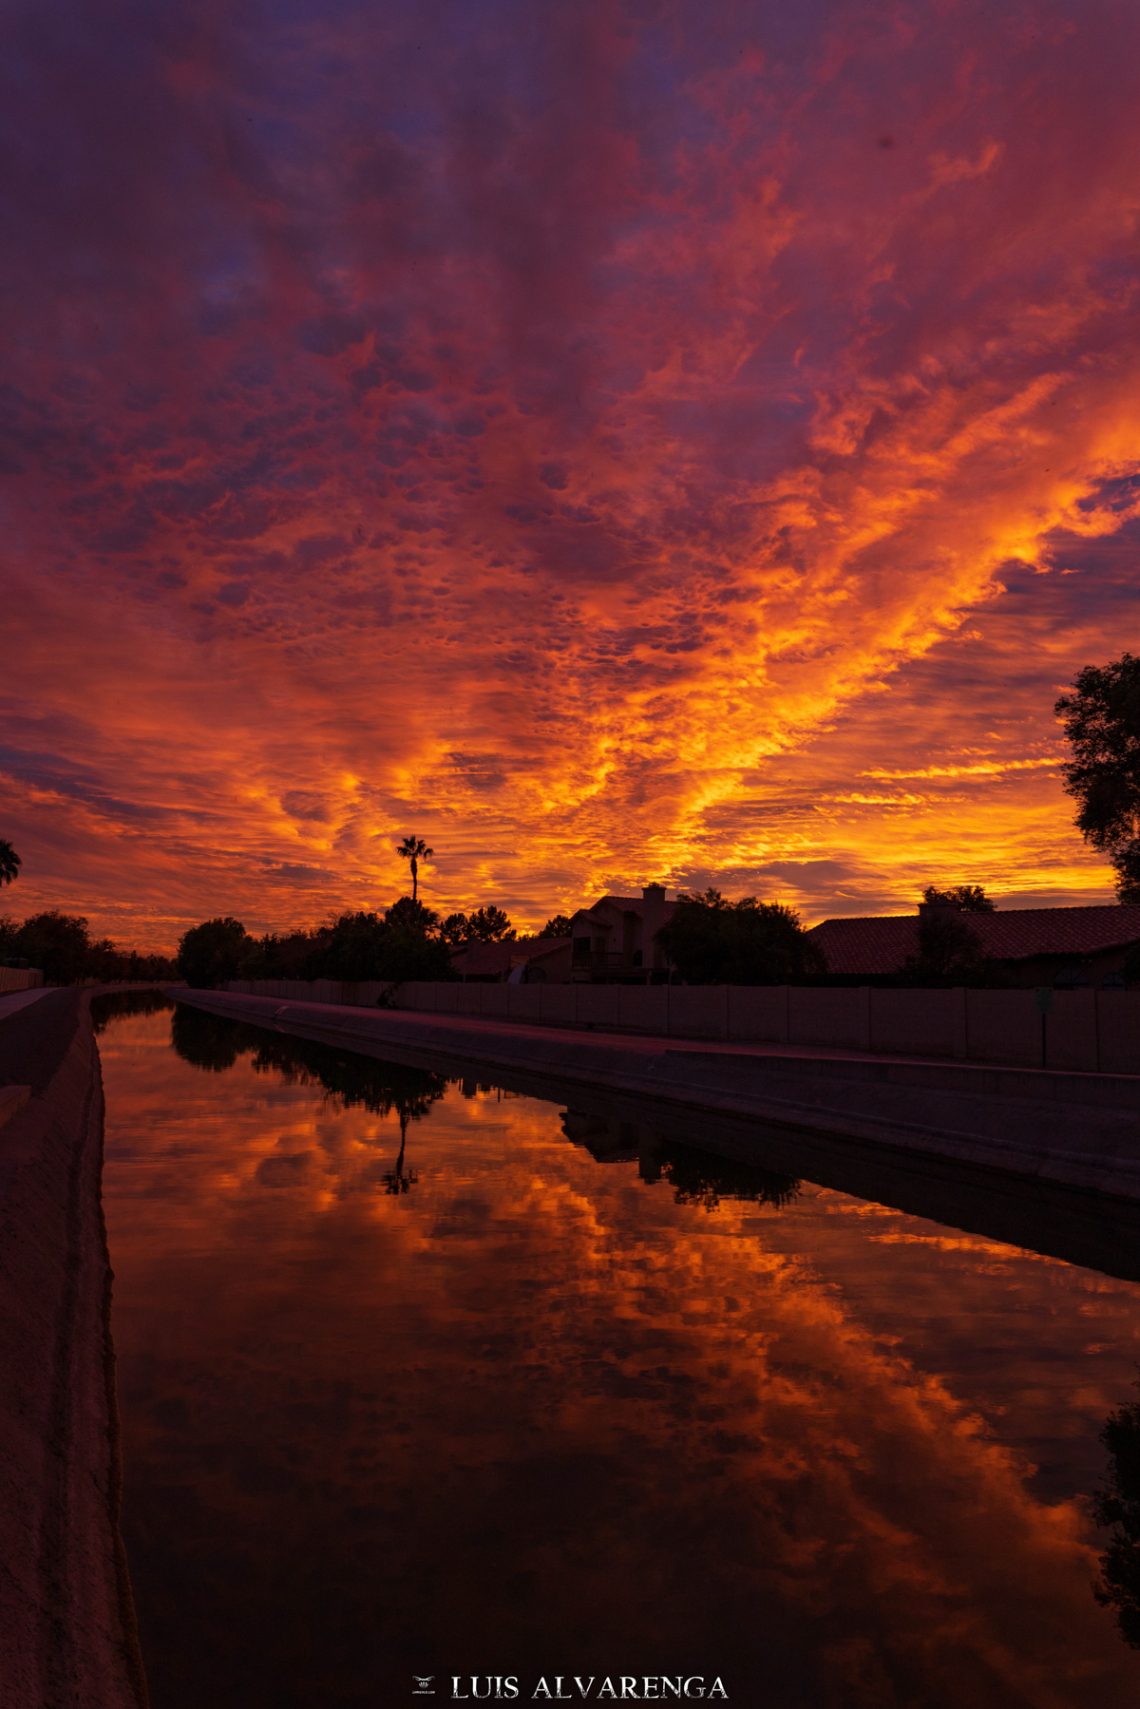 Luis Alvarenga - Sunset at the Water Canal - Gilbert 2019